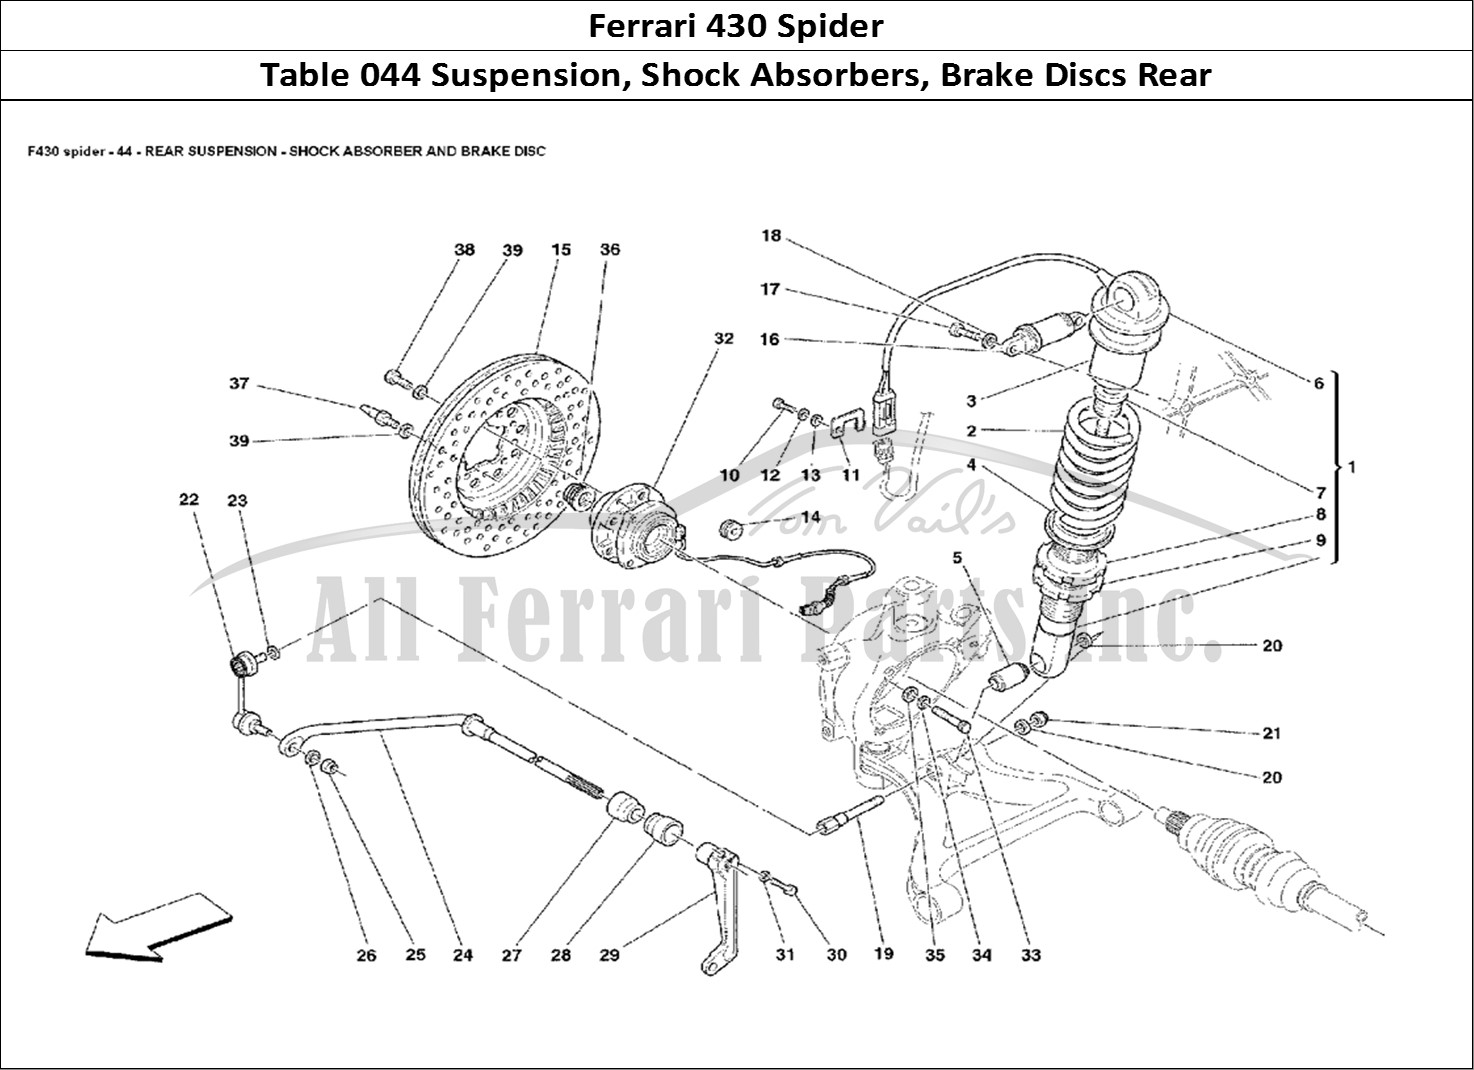 Ferrari Parts Ferrari 430 Spider Page 044 Rear Suspension - Shock A